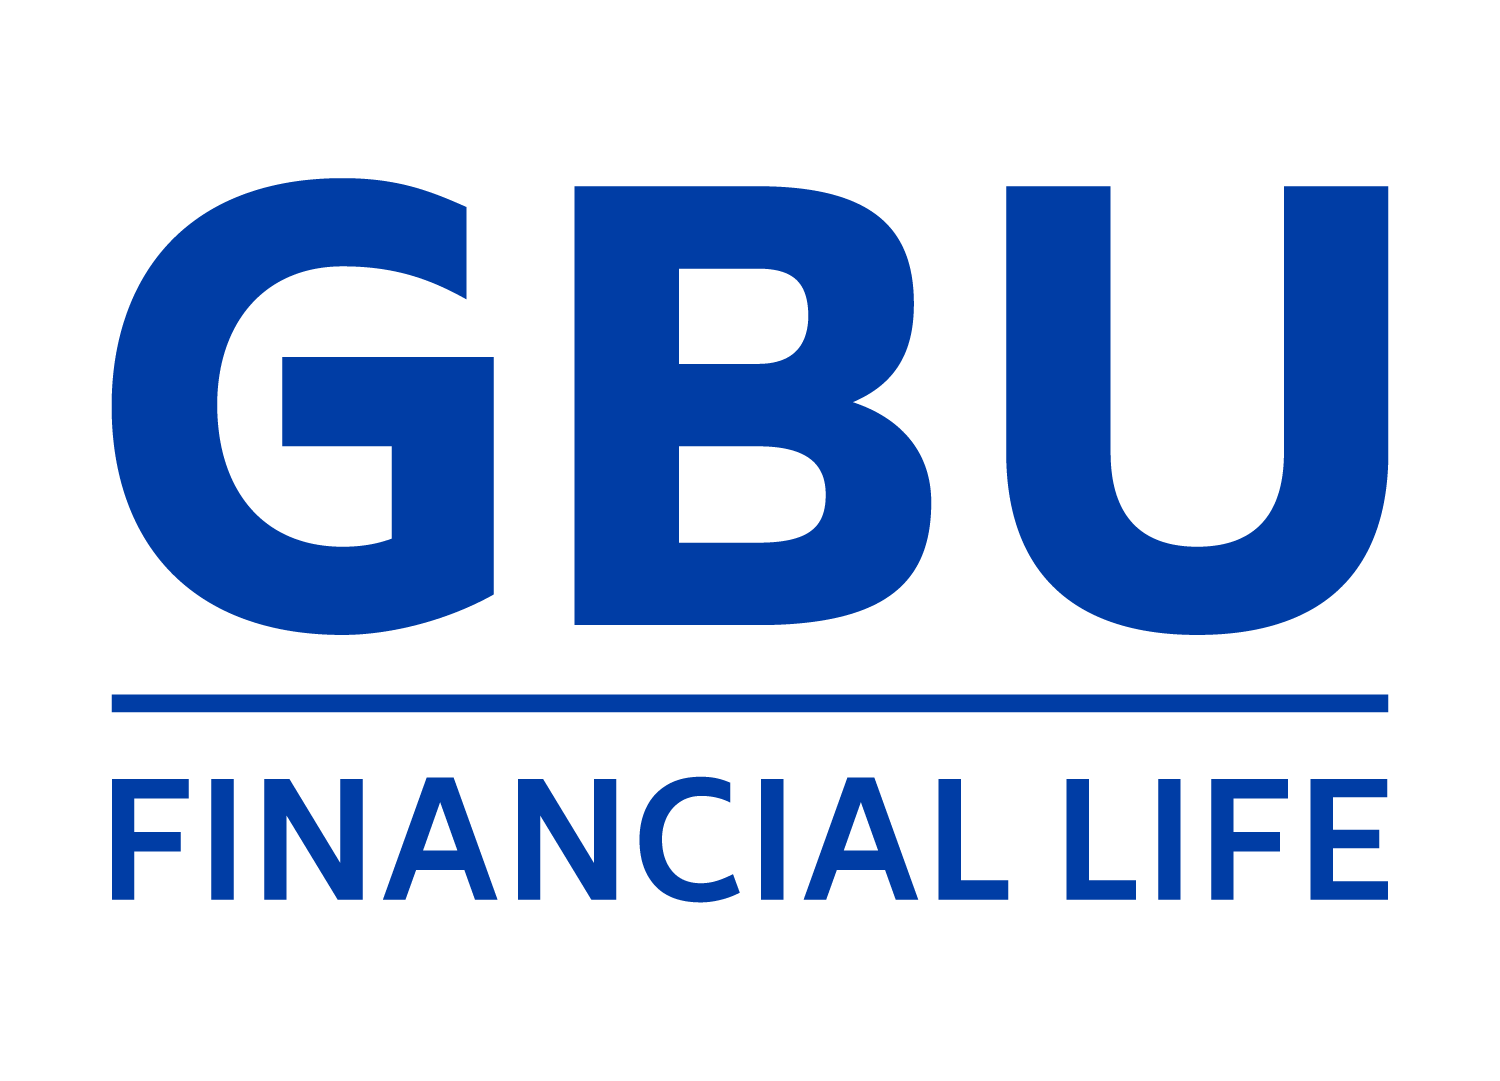 GBU Financial Life Logo